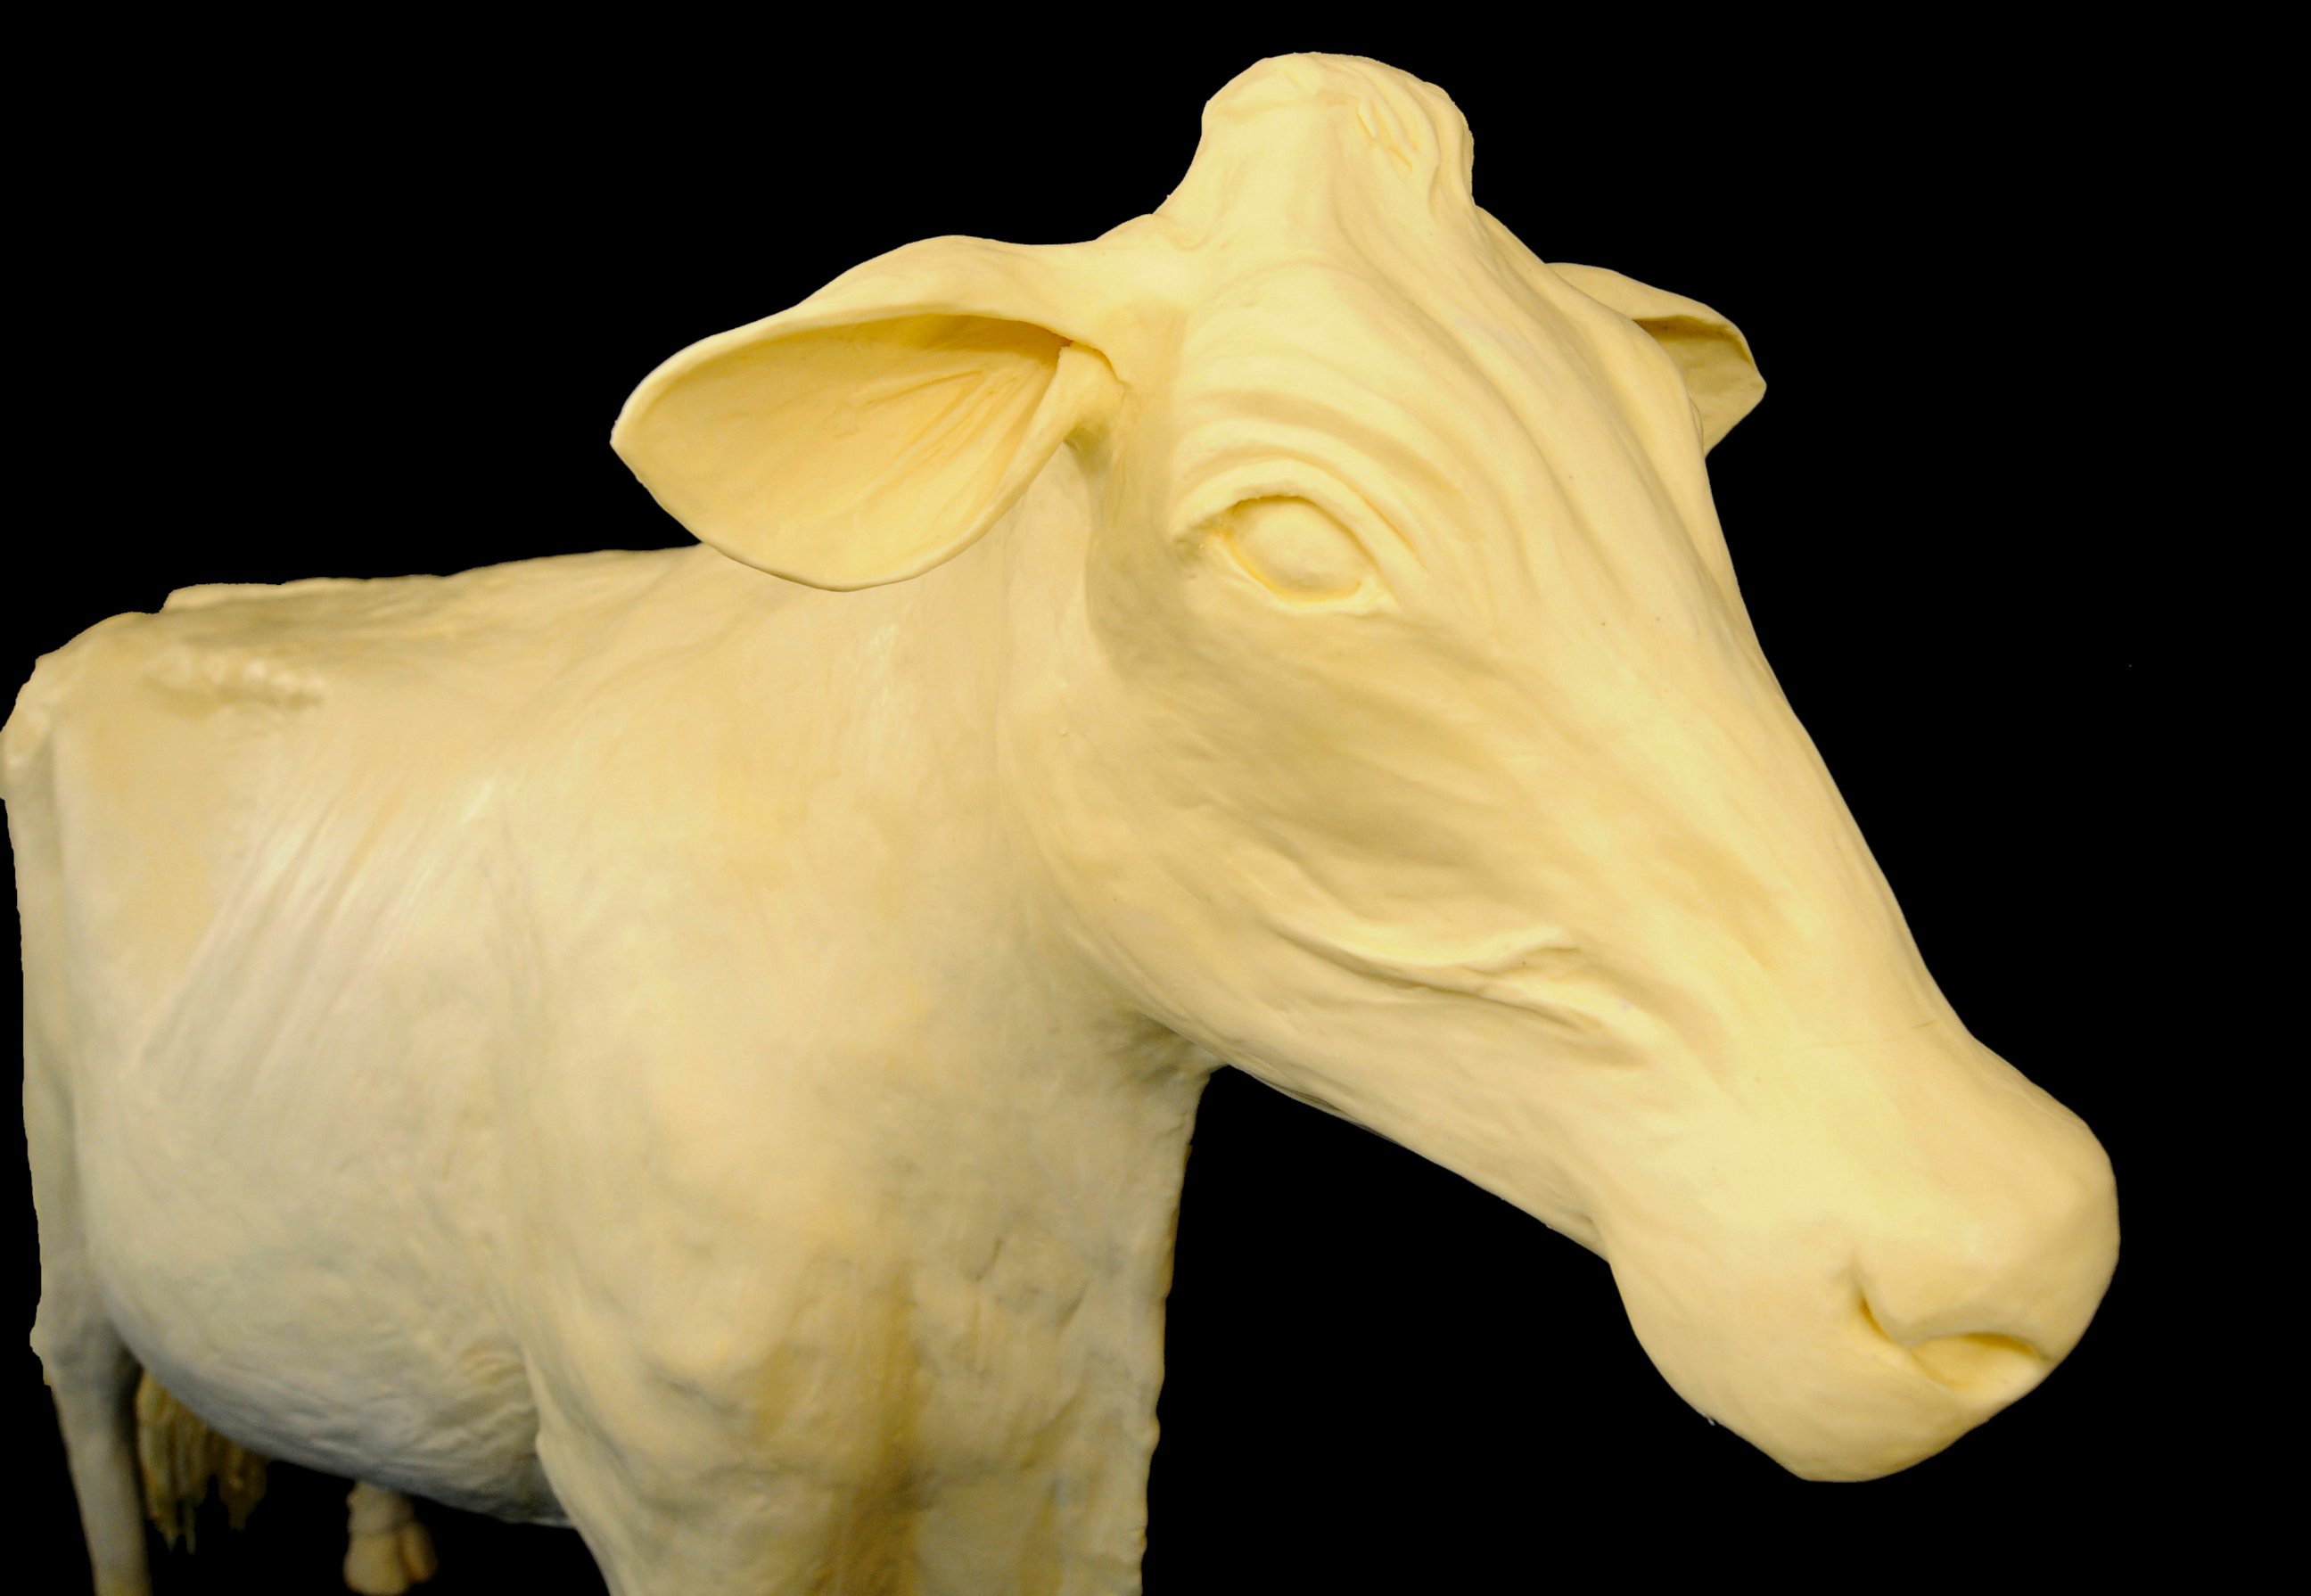 Iowa State Fair's butter sculptor shares butter skills